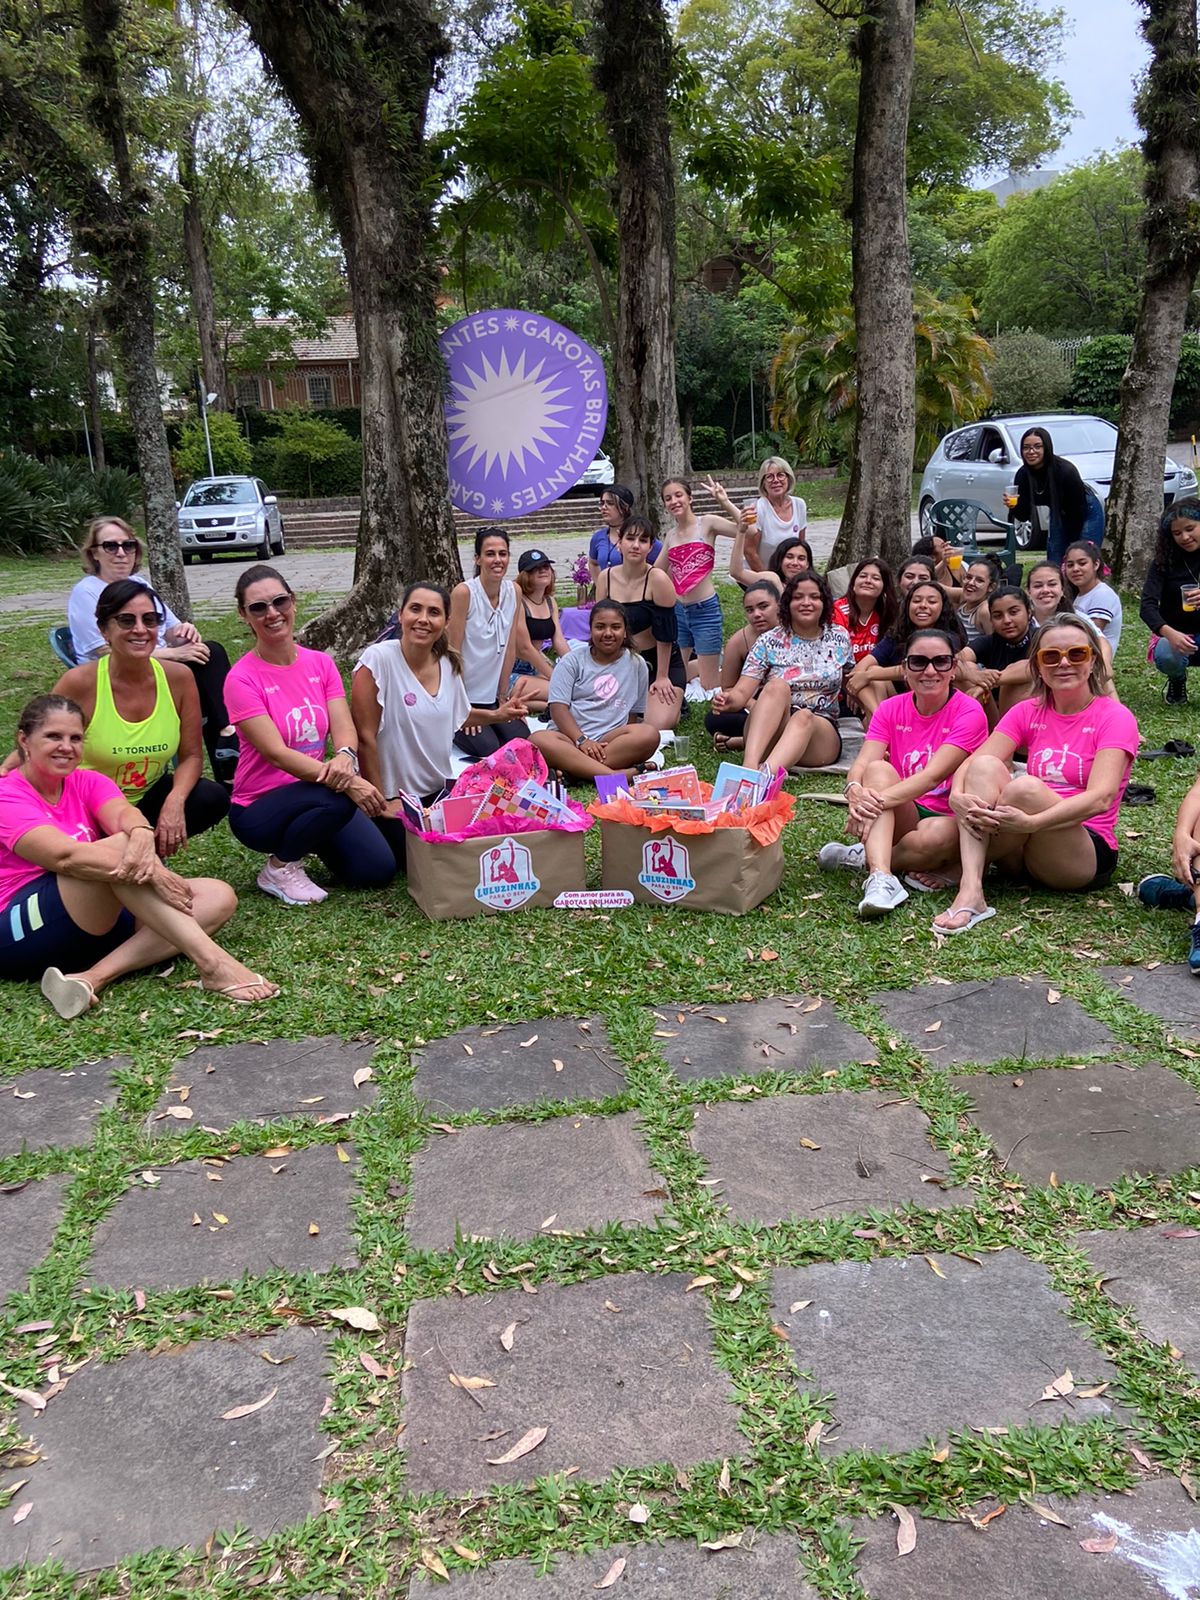 Sogipa: Representantes do Projeto Garotas Brilhantes tem tarde especial na  Sogipa proporcionada pelo grupo das Luluzinhas